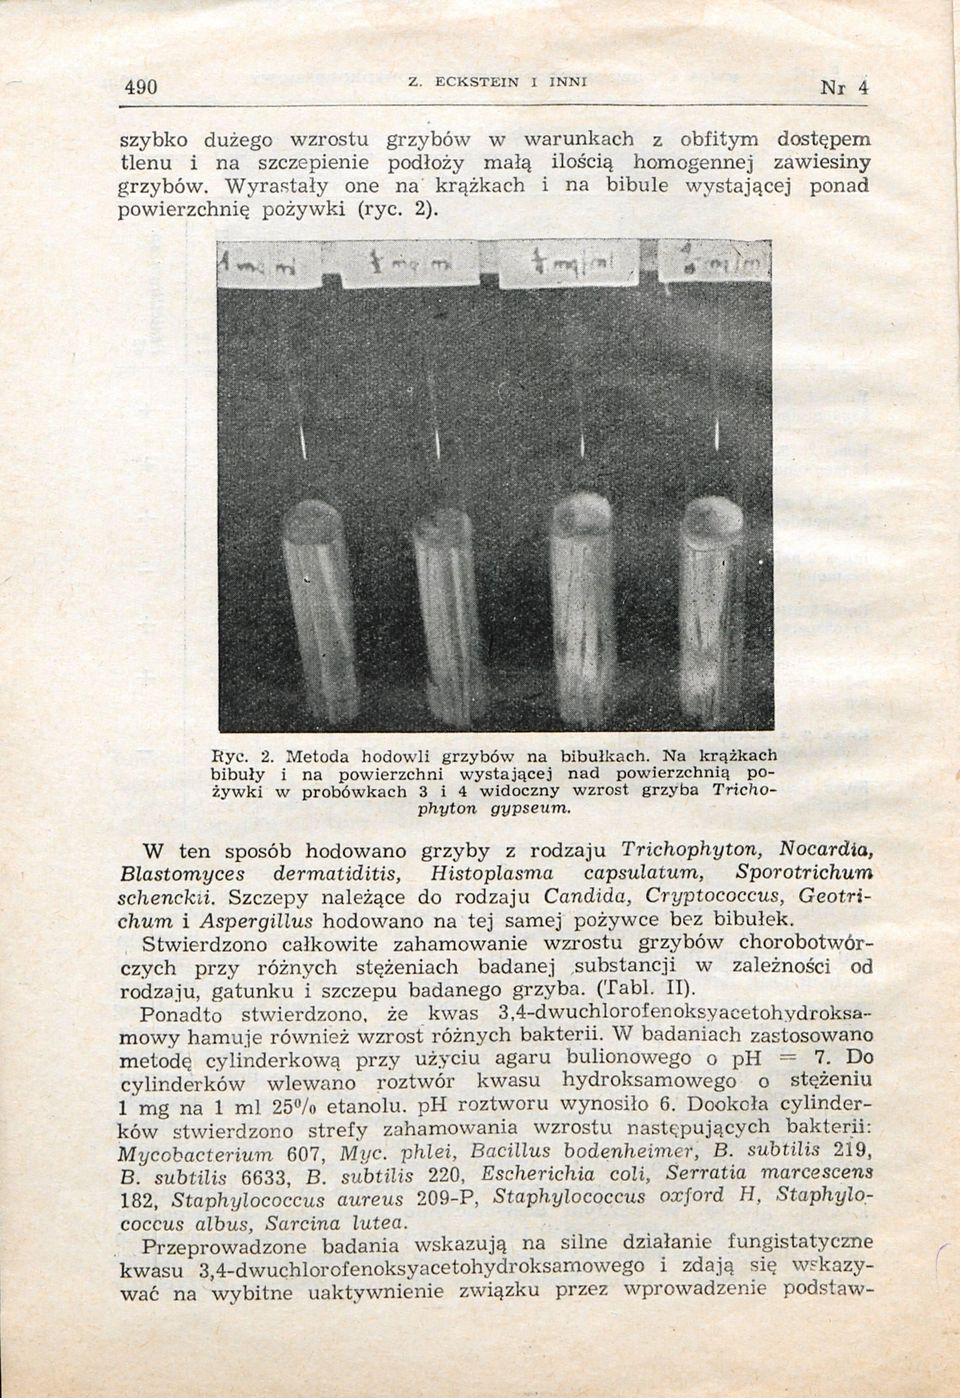 Na krążkach bibuły i na powierzchni wystającej nad powierzchnią pożywki w probówkach 3 i 4 widoczny wzrost grzyba Trichophyton gypseum.